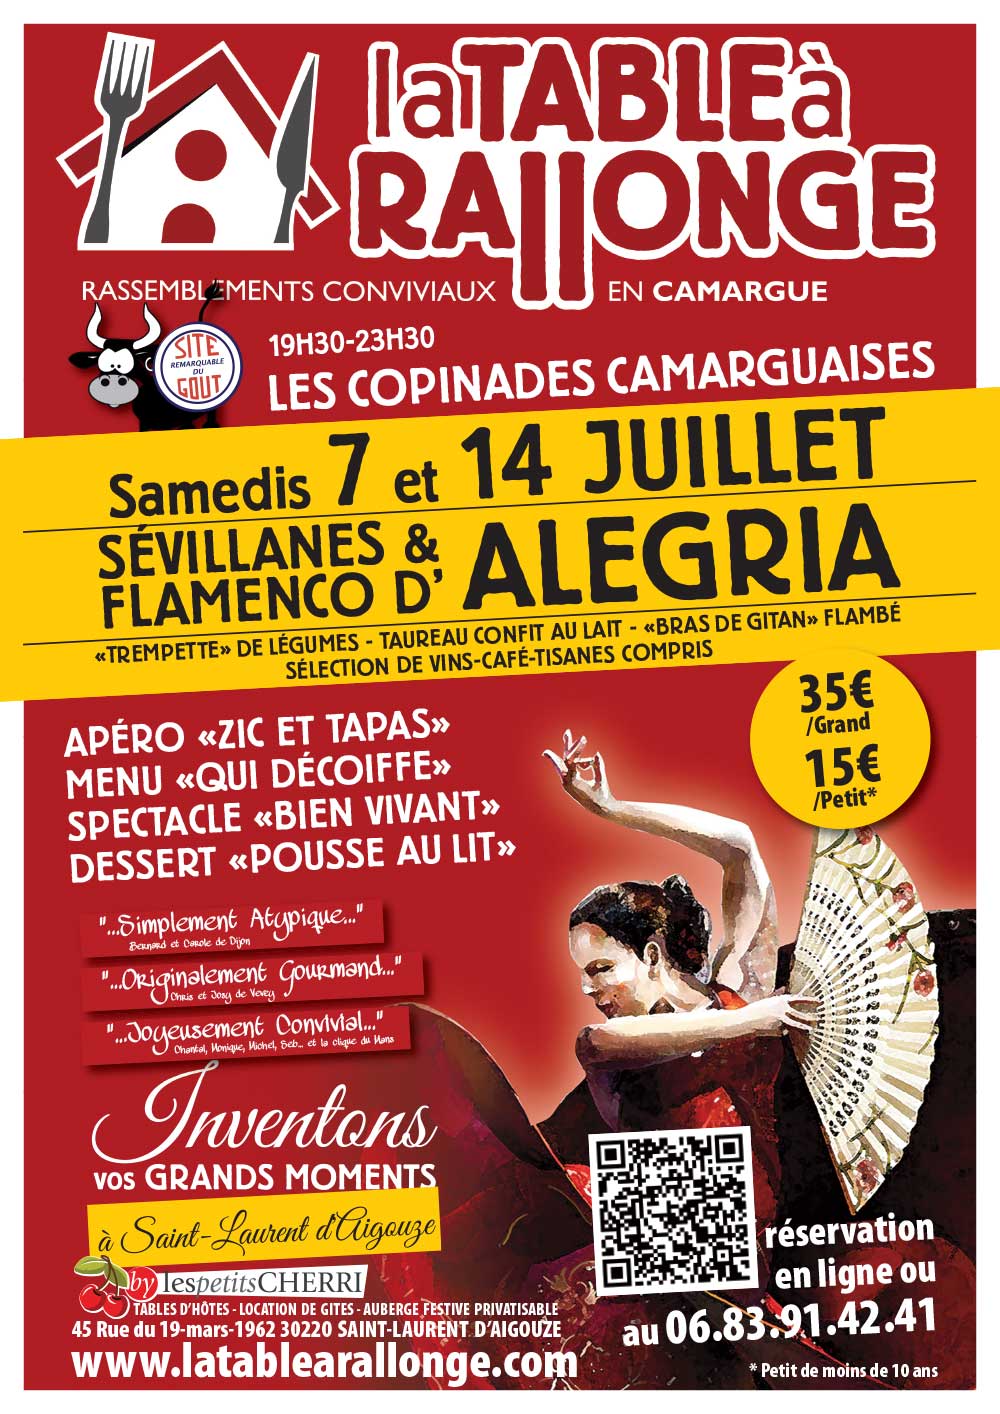 Diner spectacle des 7 et A4 juillet à LA TABLE A RALLONGE EN CAMARGUE. Soirée sévillanes et Flamenco, musiques gitanes, soirée dansante